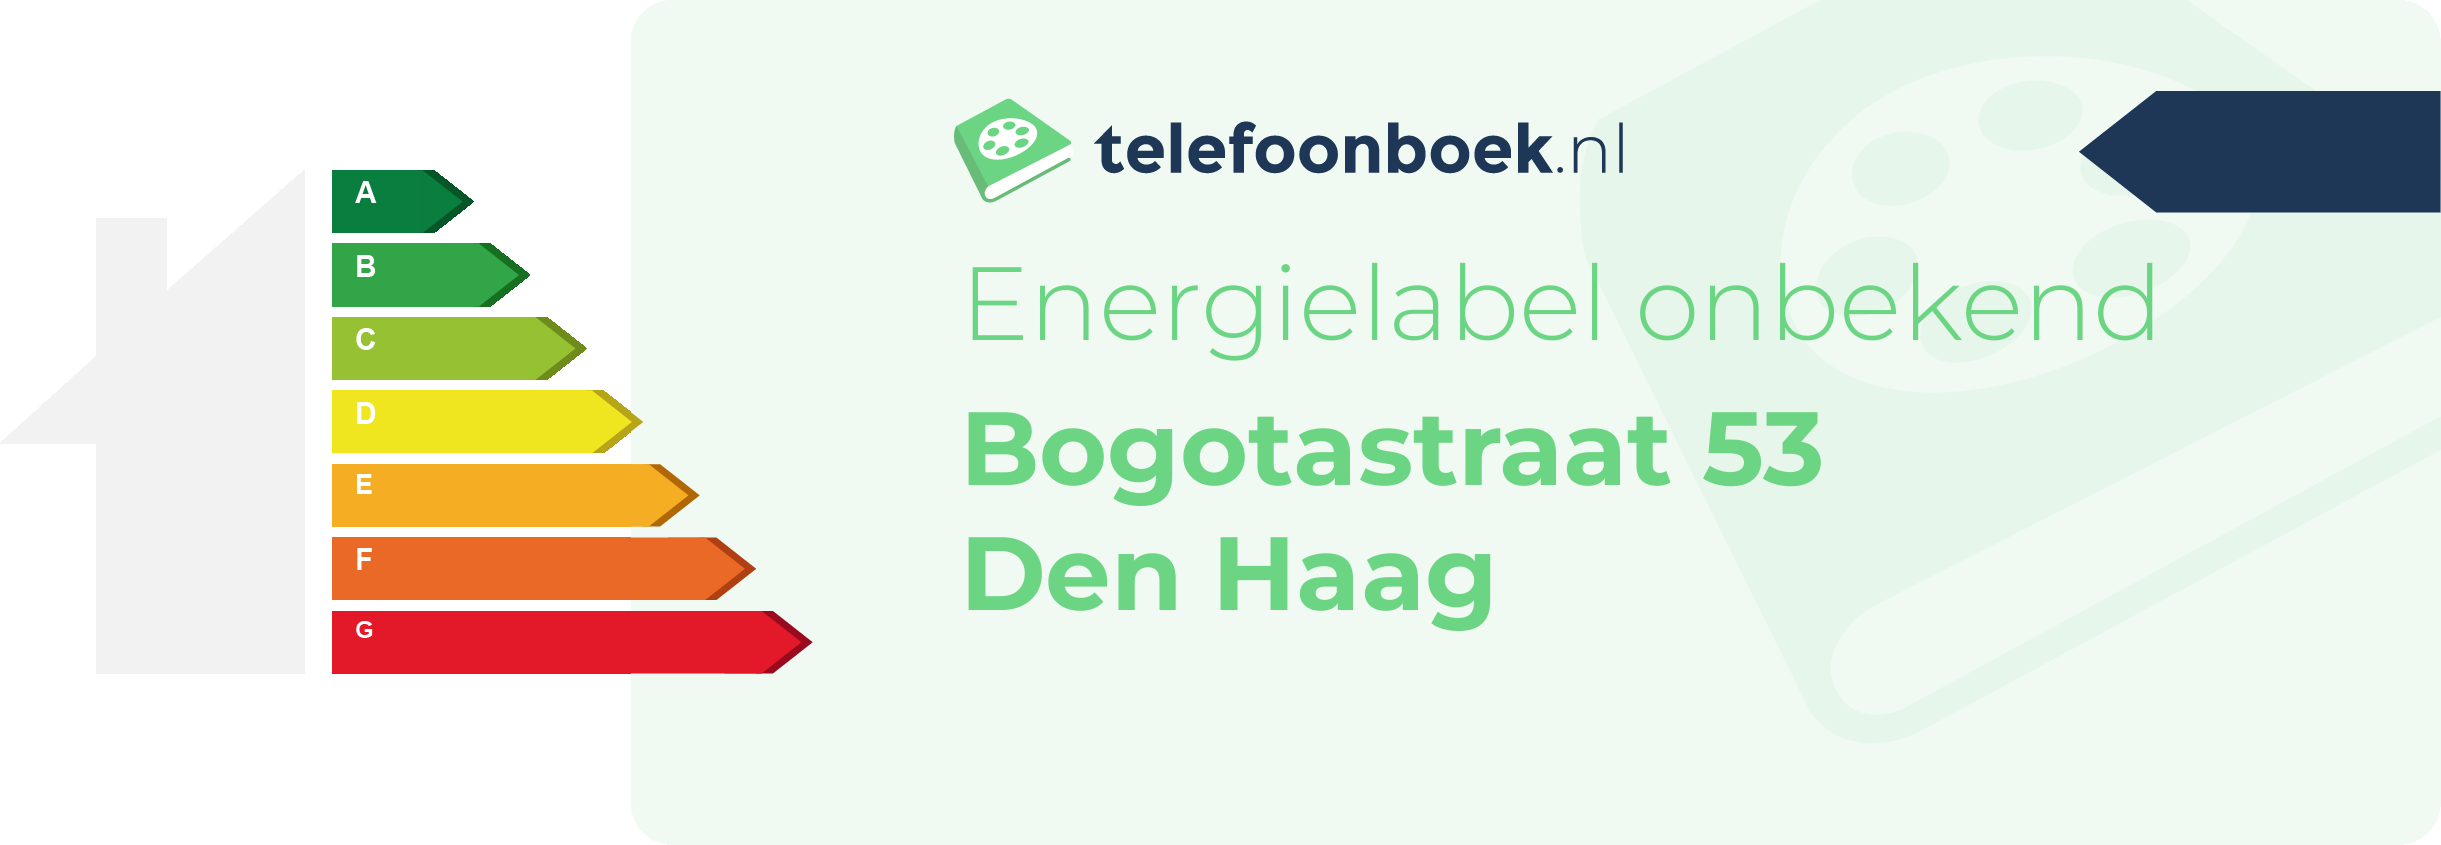 Energielabel Bogotastraat 53 Den Haag